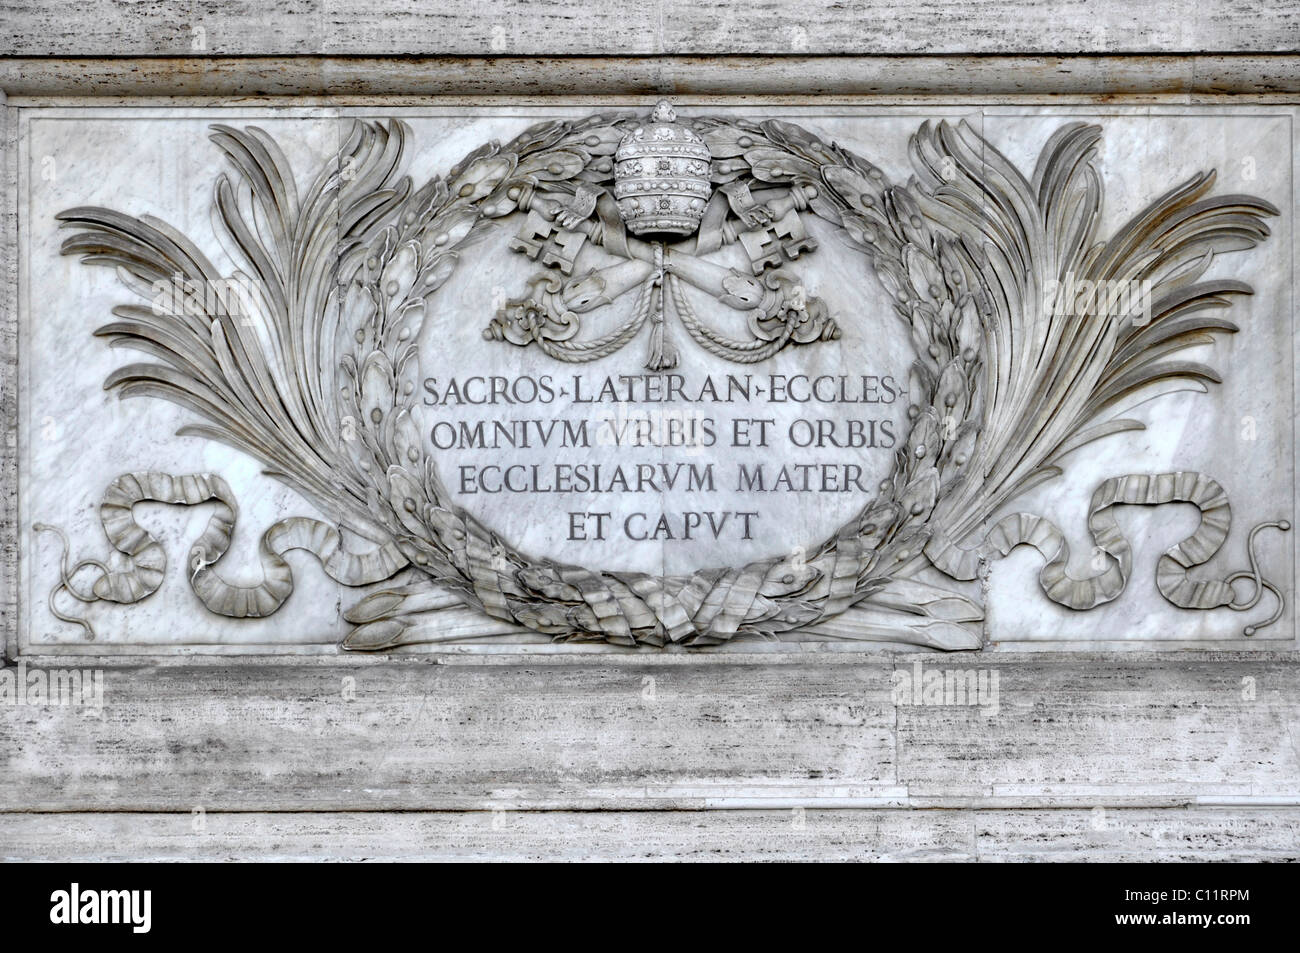 Inscription on portal pillar, facade of the San Giovanni Basilica in Laterano, Rome, Lazio, Italy, Europe Stock Photo